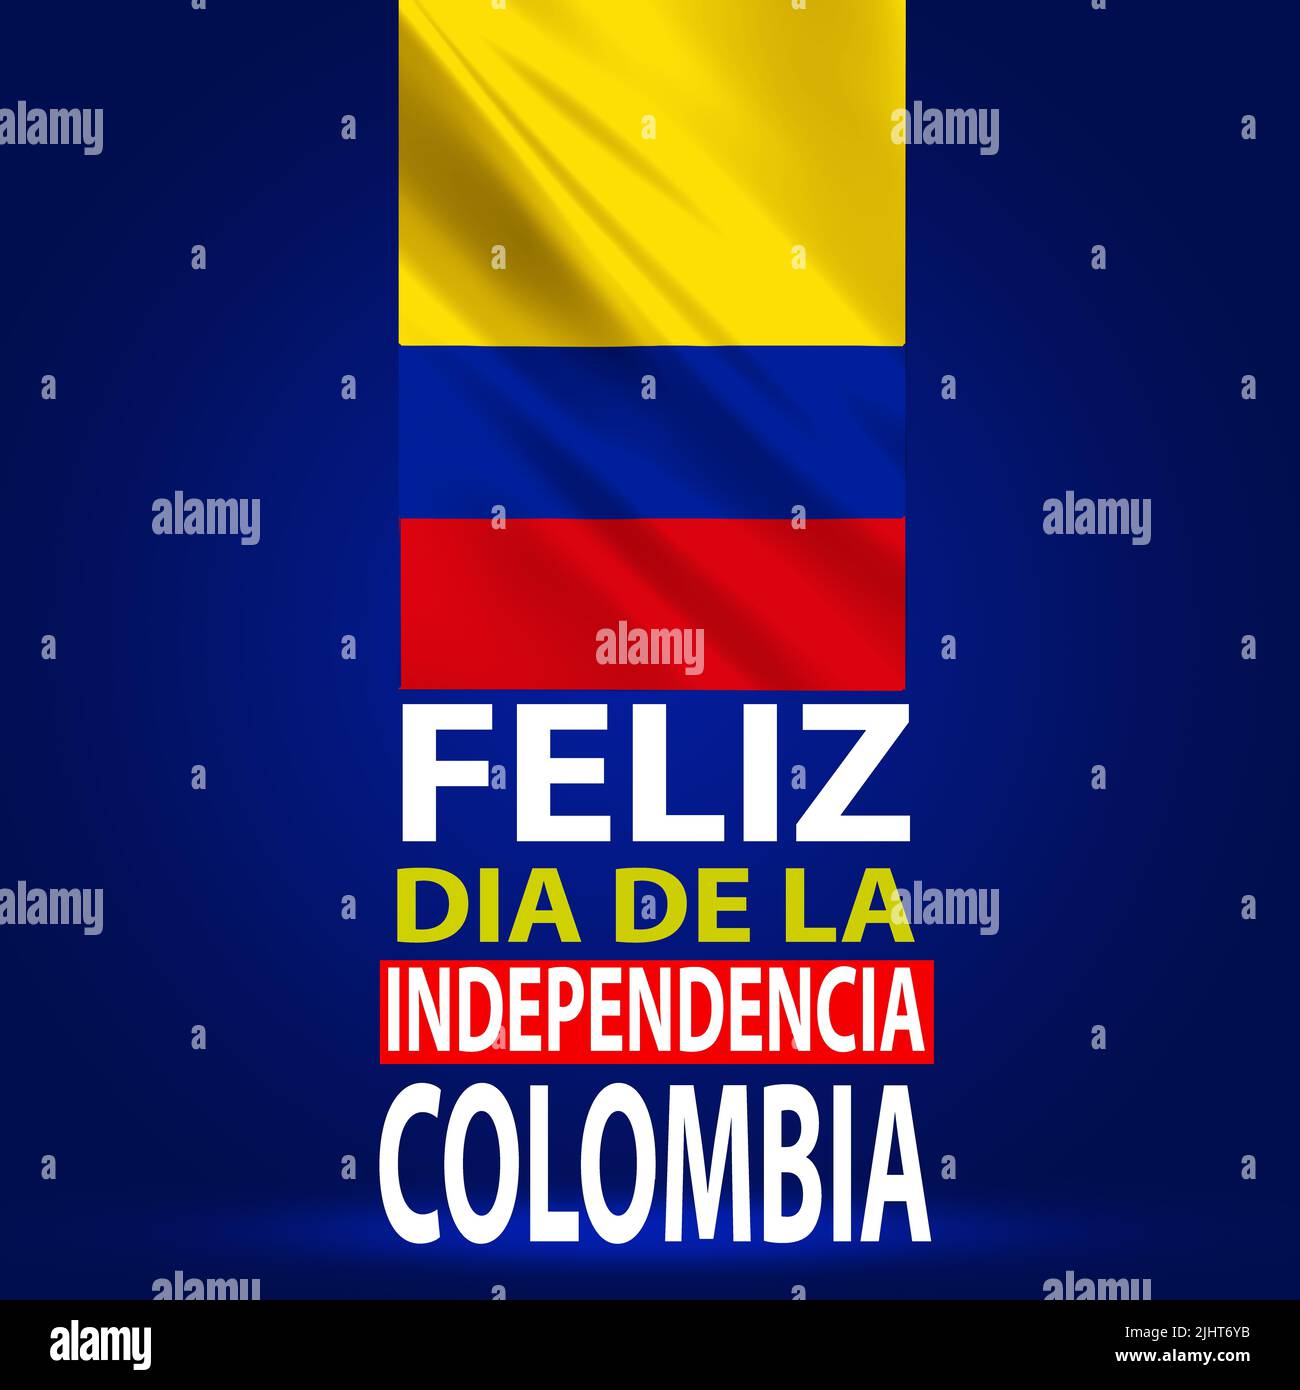 Feliz Dia de la Independencia Colombie fond d'écran avec drapeau de spéléologie. Résumé fête nationale célébration et souhaits illustrationratio Banque D'Images